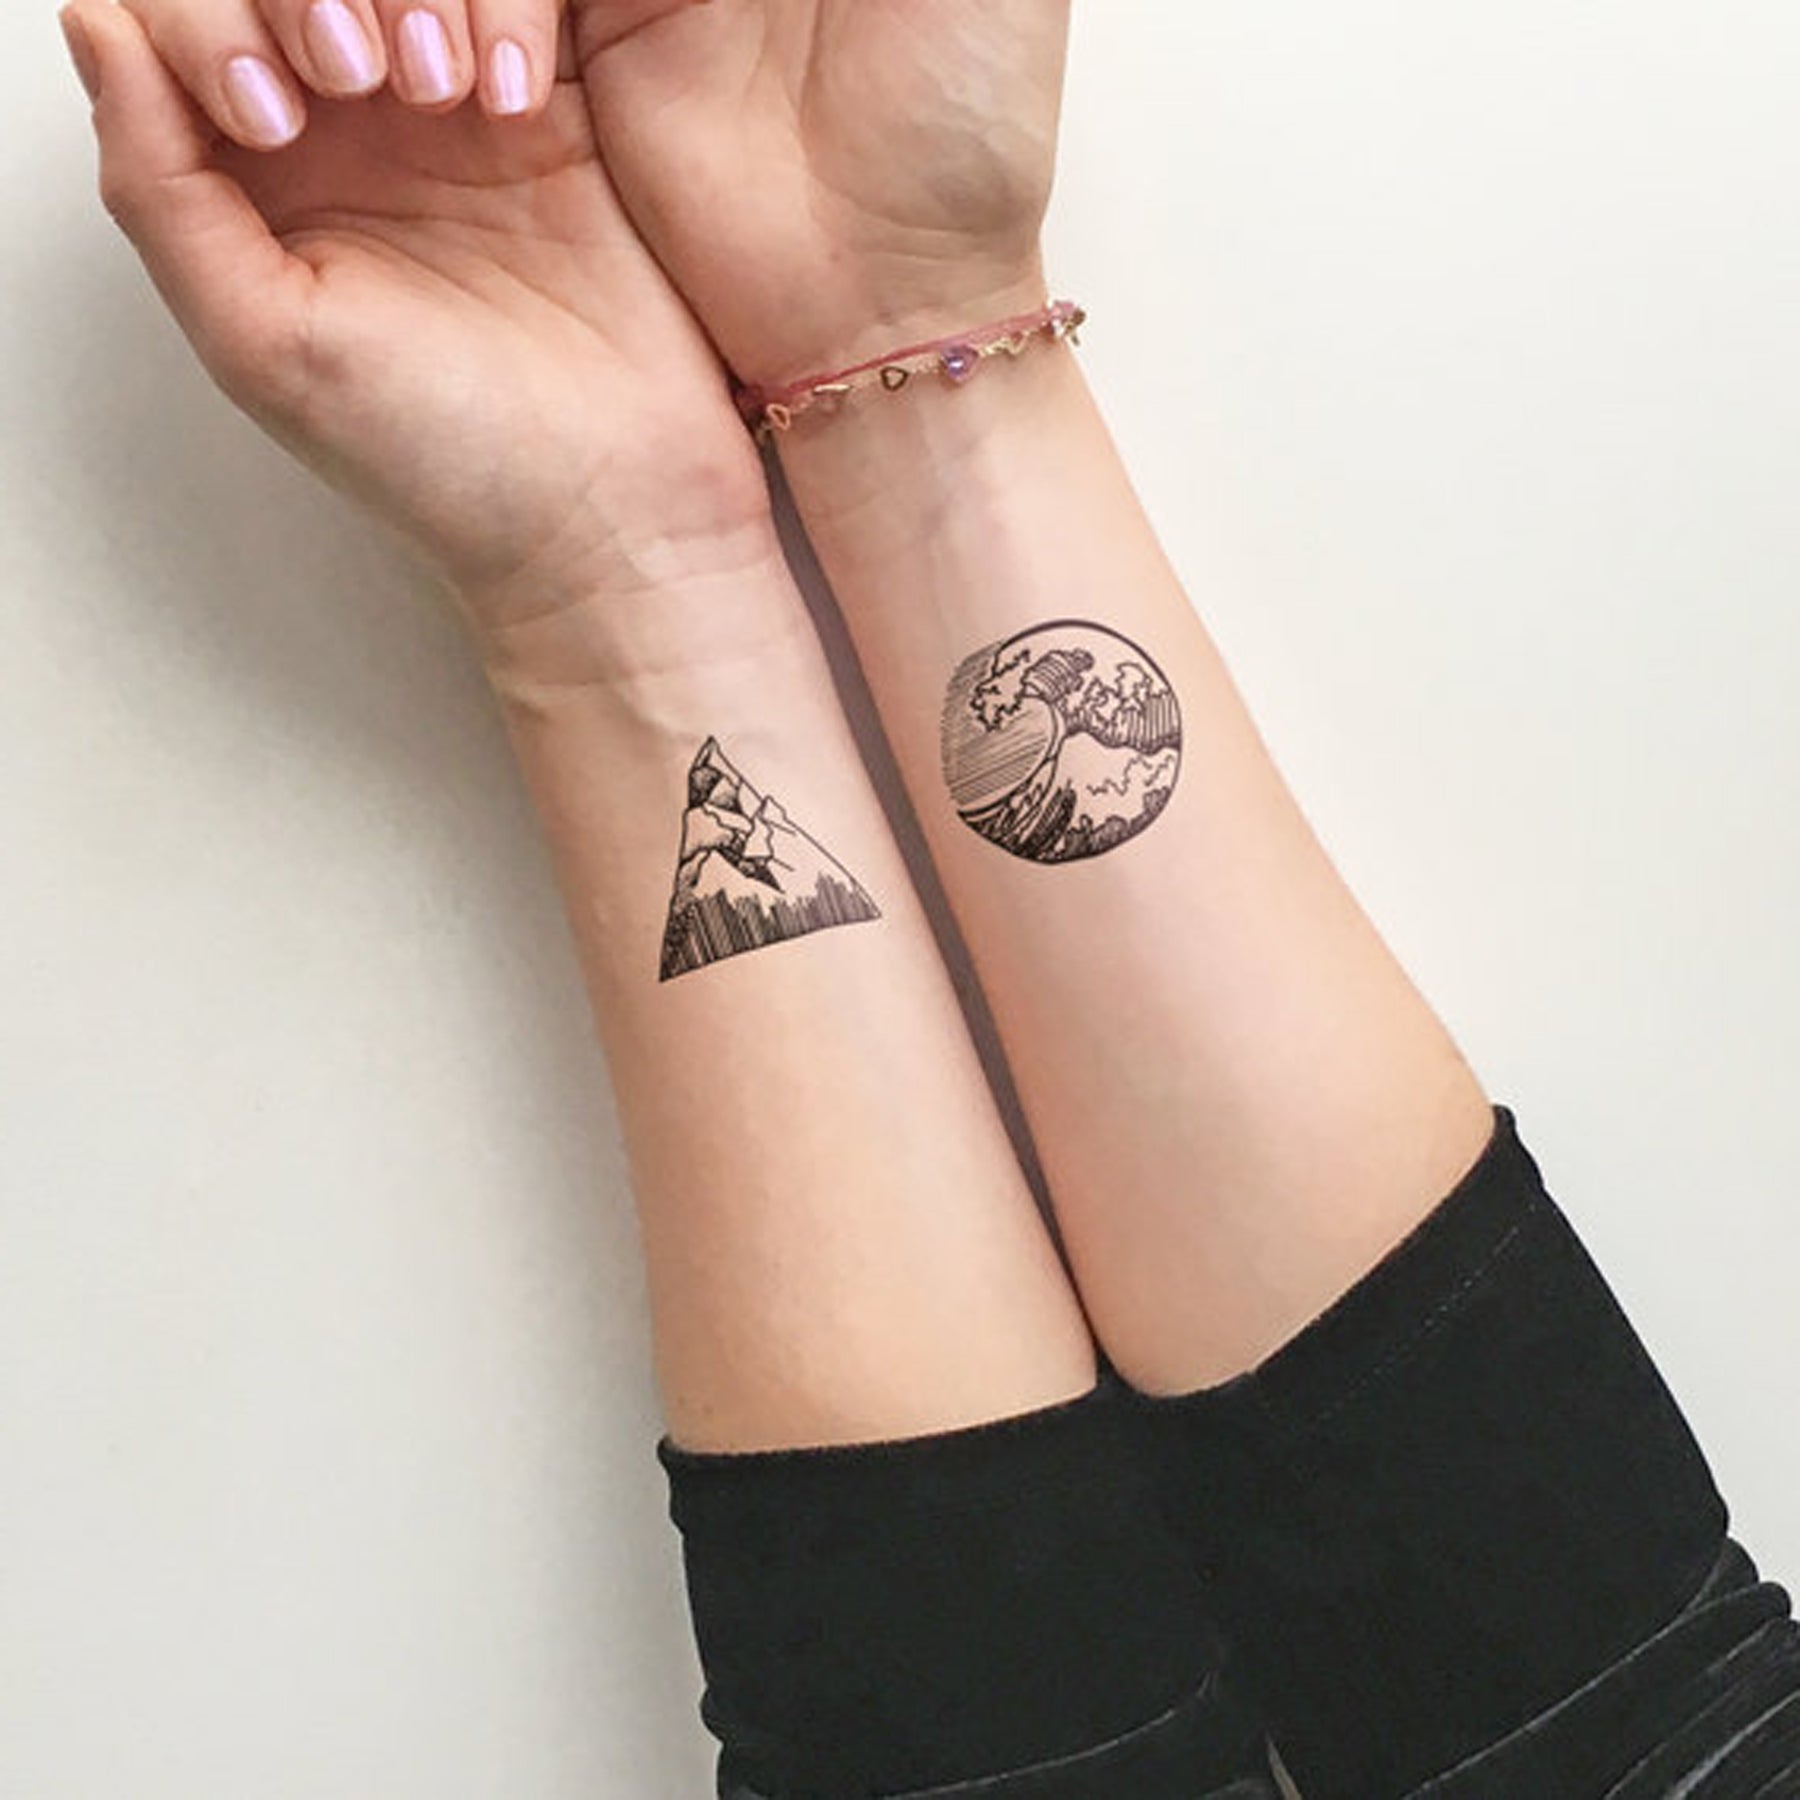 51 Mountain Tattoo Ideas That Are As Good As Fresh Air  Tattoo Glee